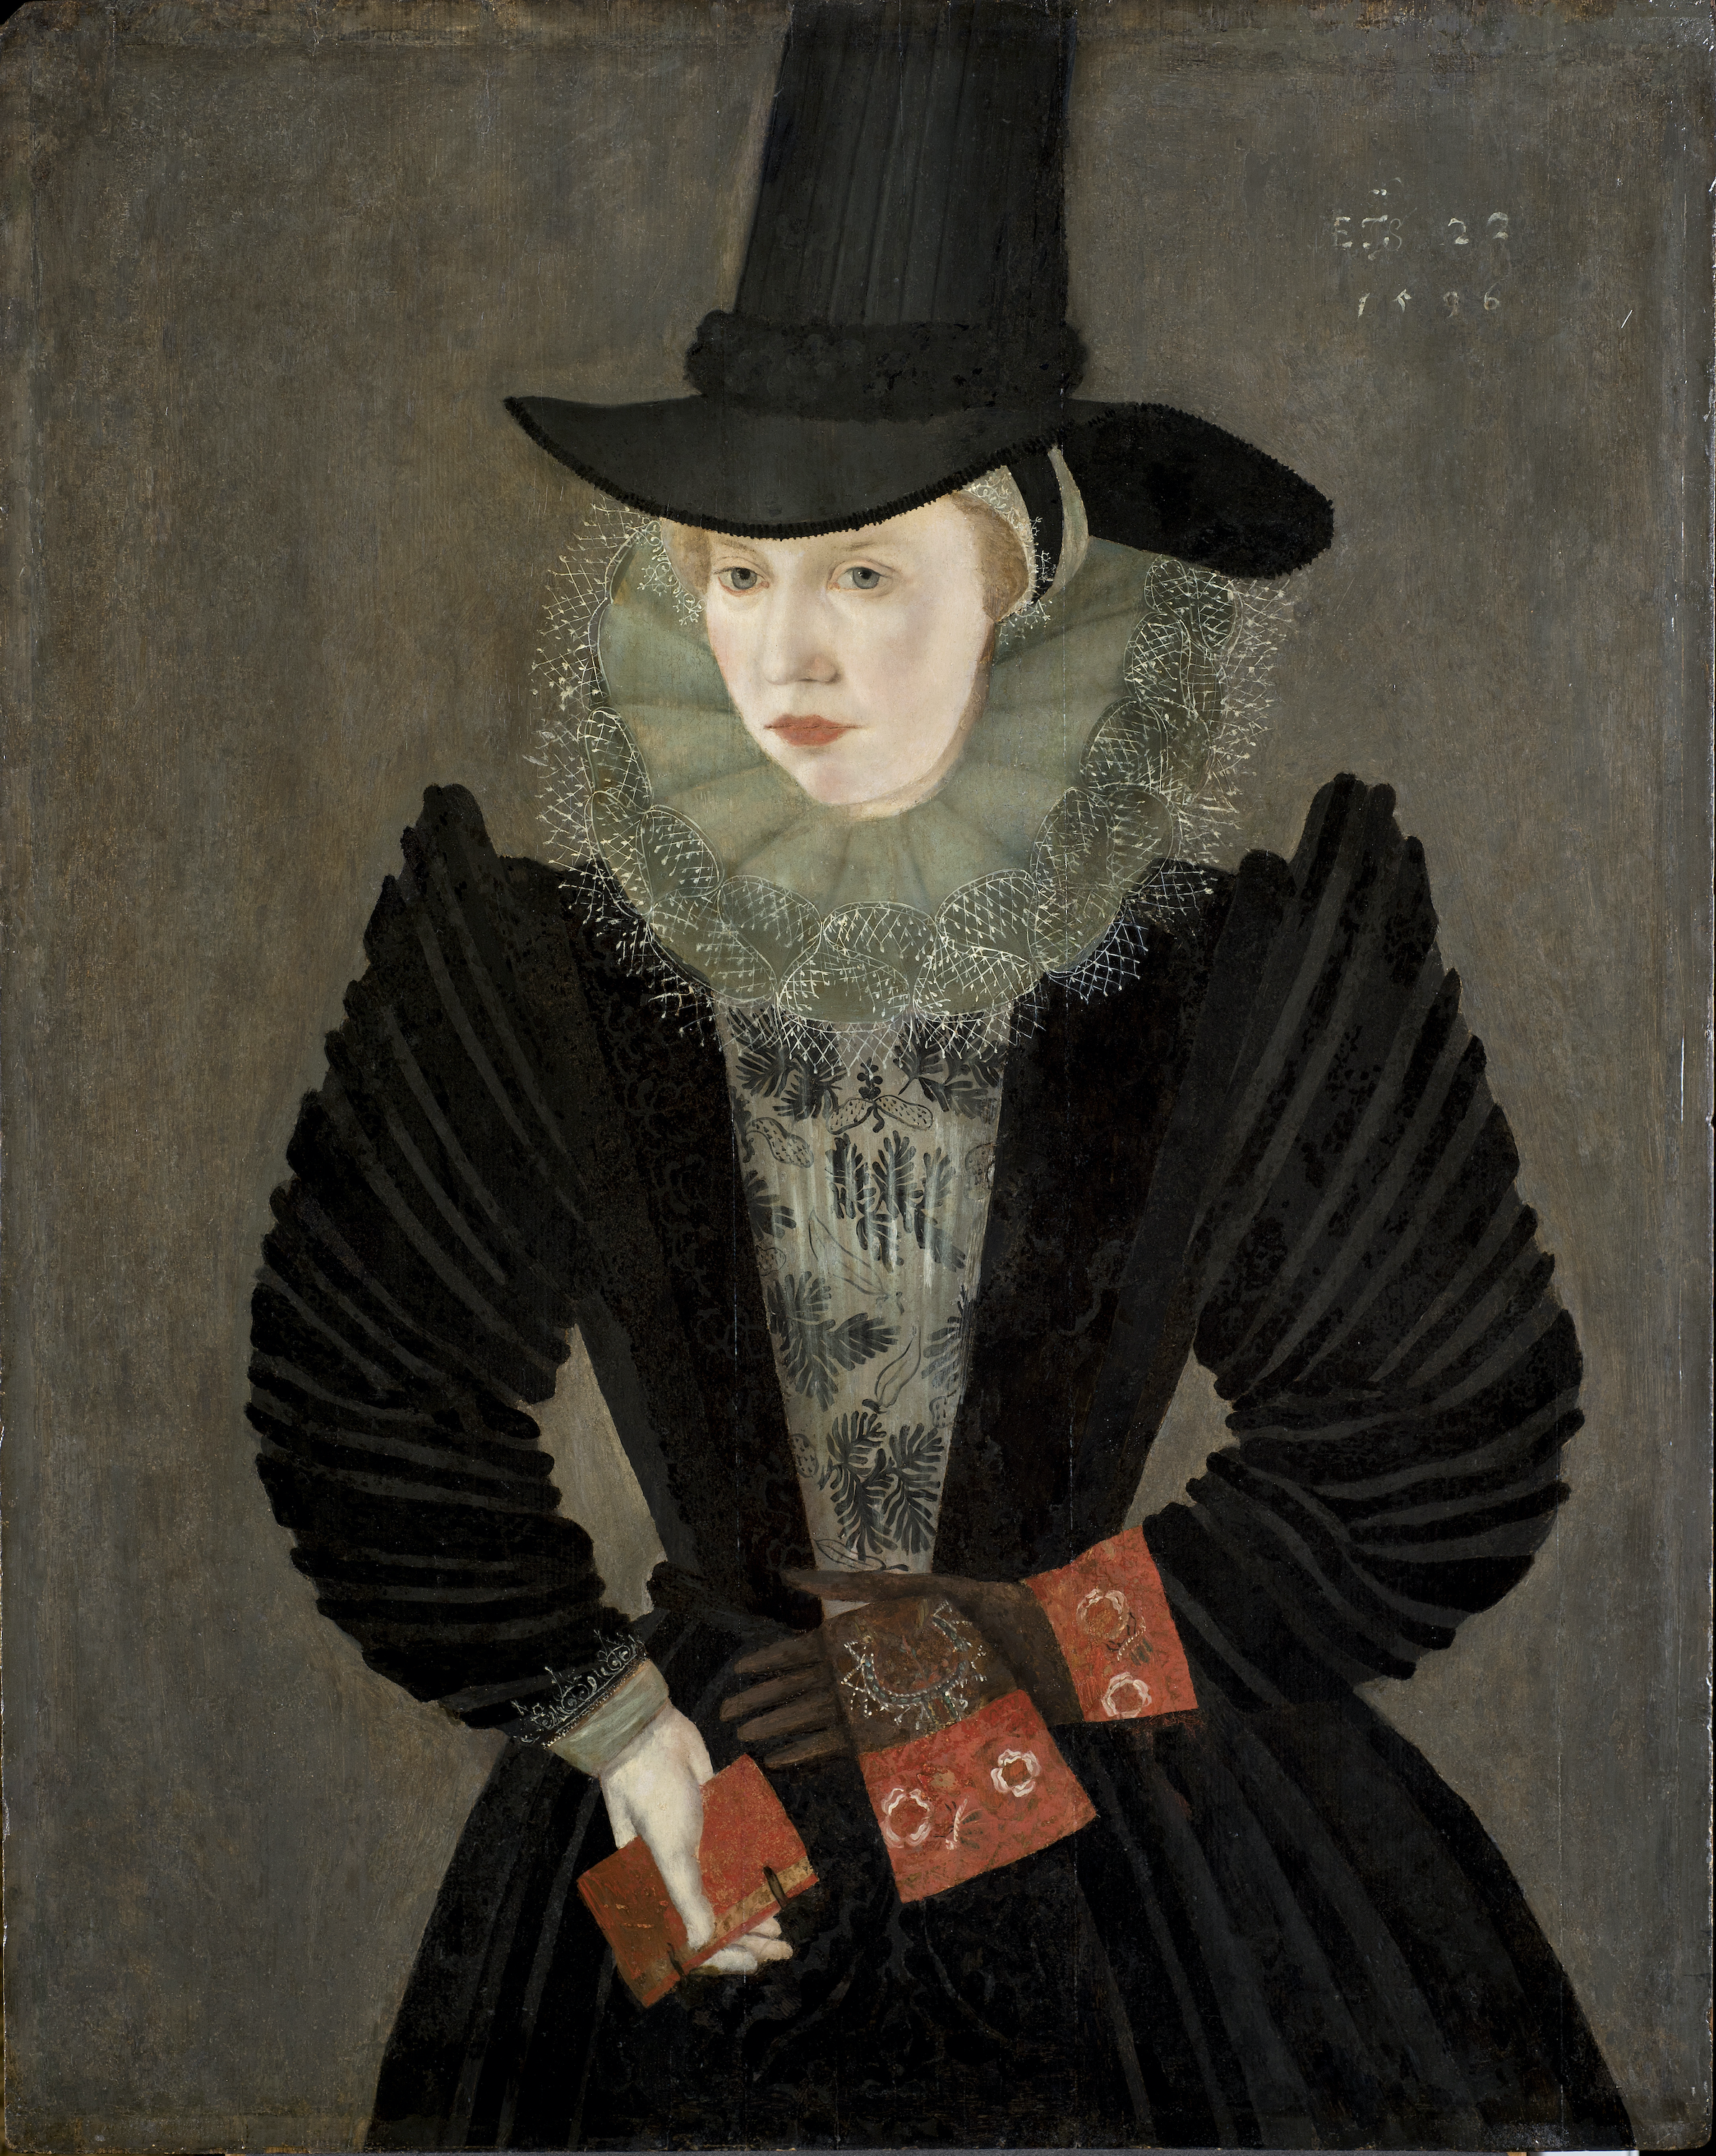 Joan Alleyn by Άγνωστος Καλ - 1596 - 79.1 x 63.2 cm 